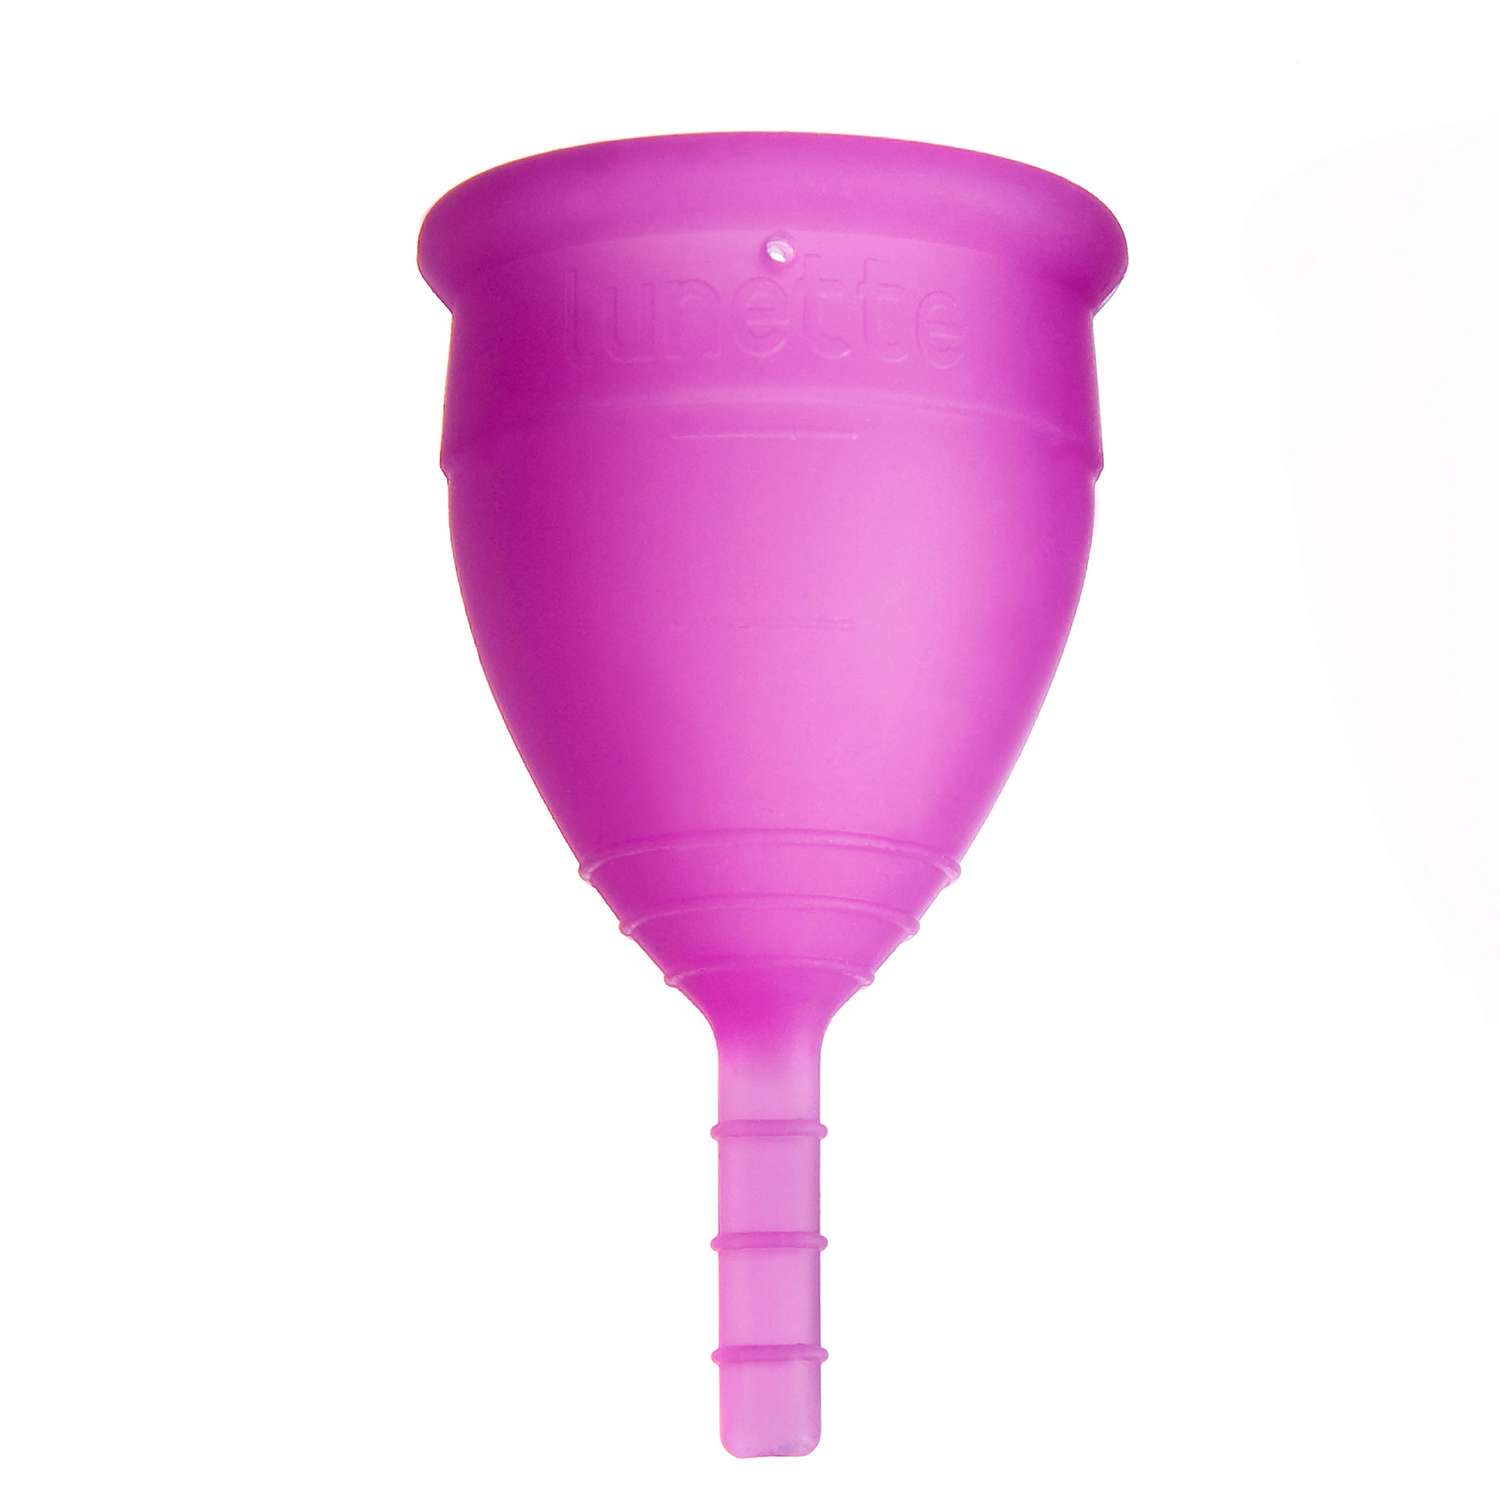 Менструальная чаша Lunette фиолетовая Model 1 - фото 2